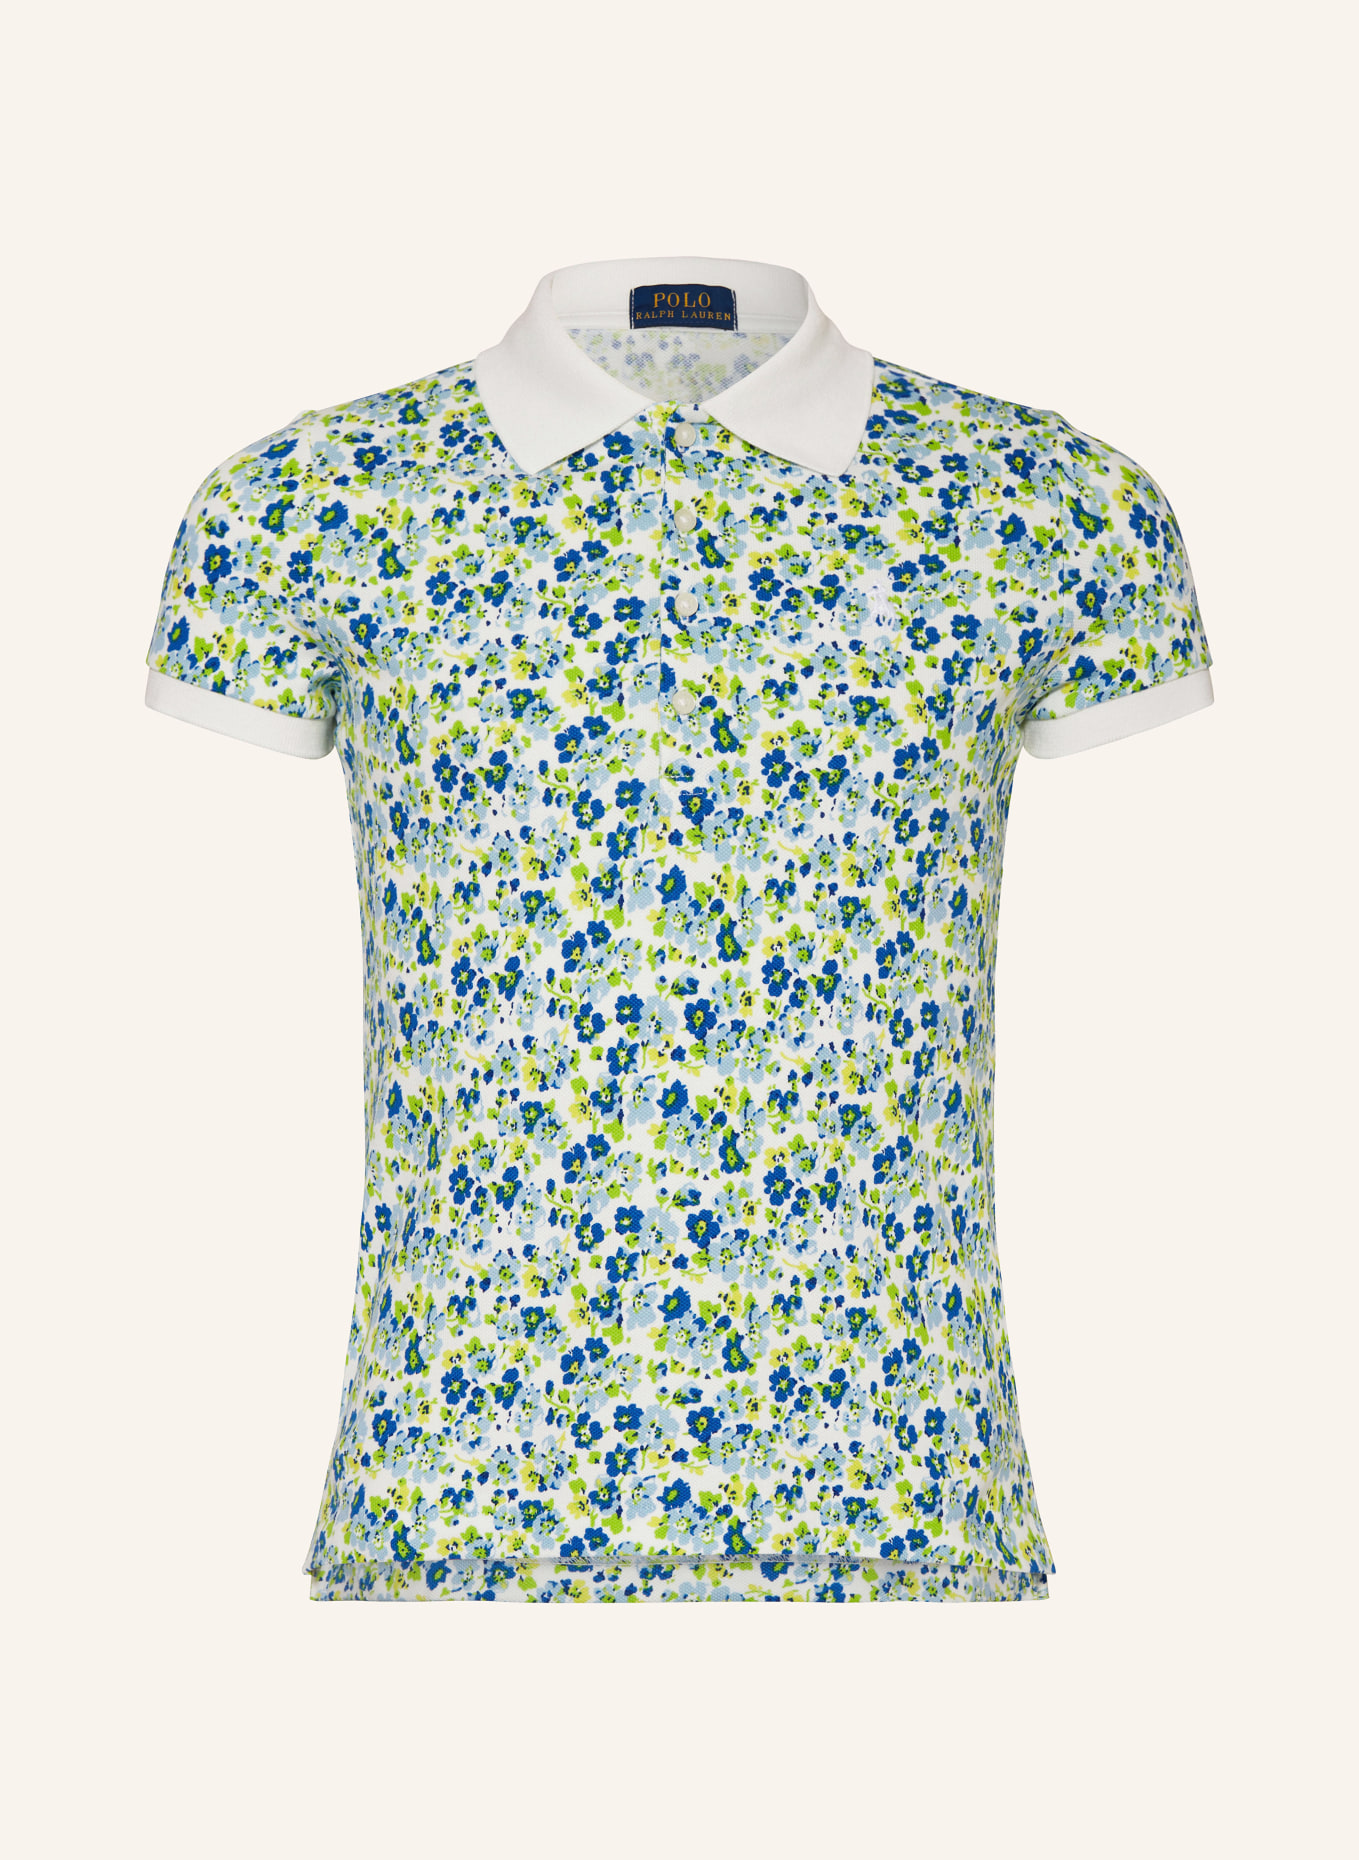 POLO RALPH LAUREN Piqué-Poloshirt, Farbe: WEISS/ BLAU/ GELB (Bild 1)